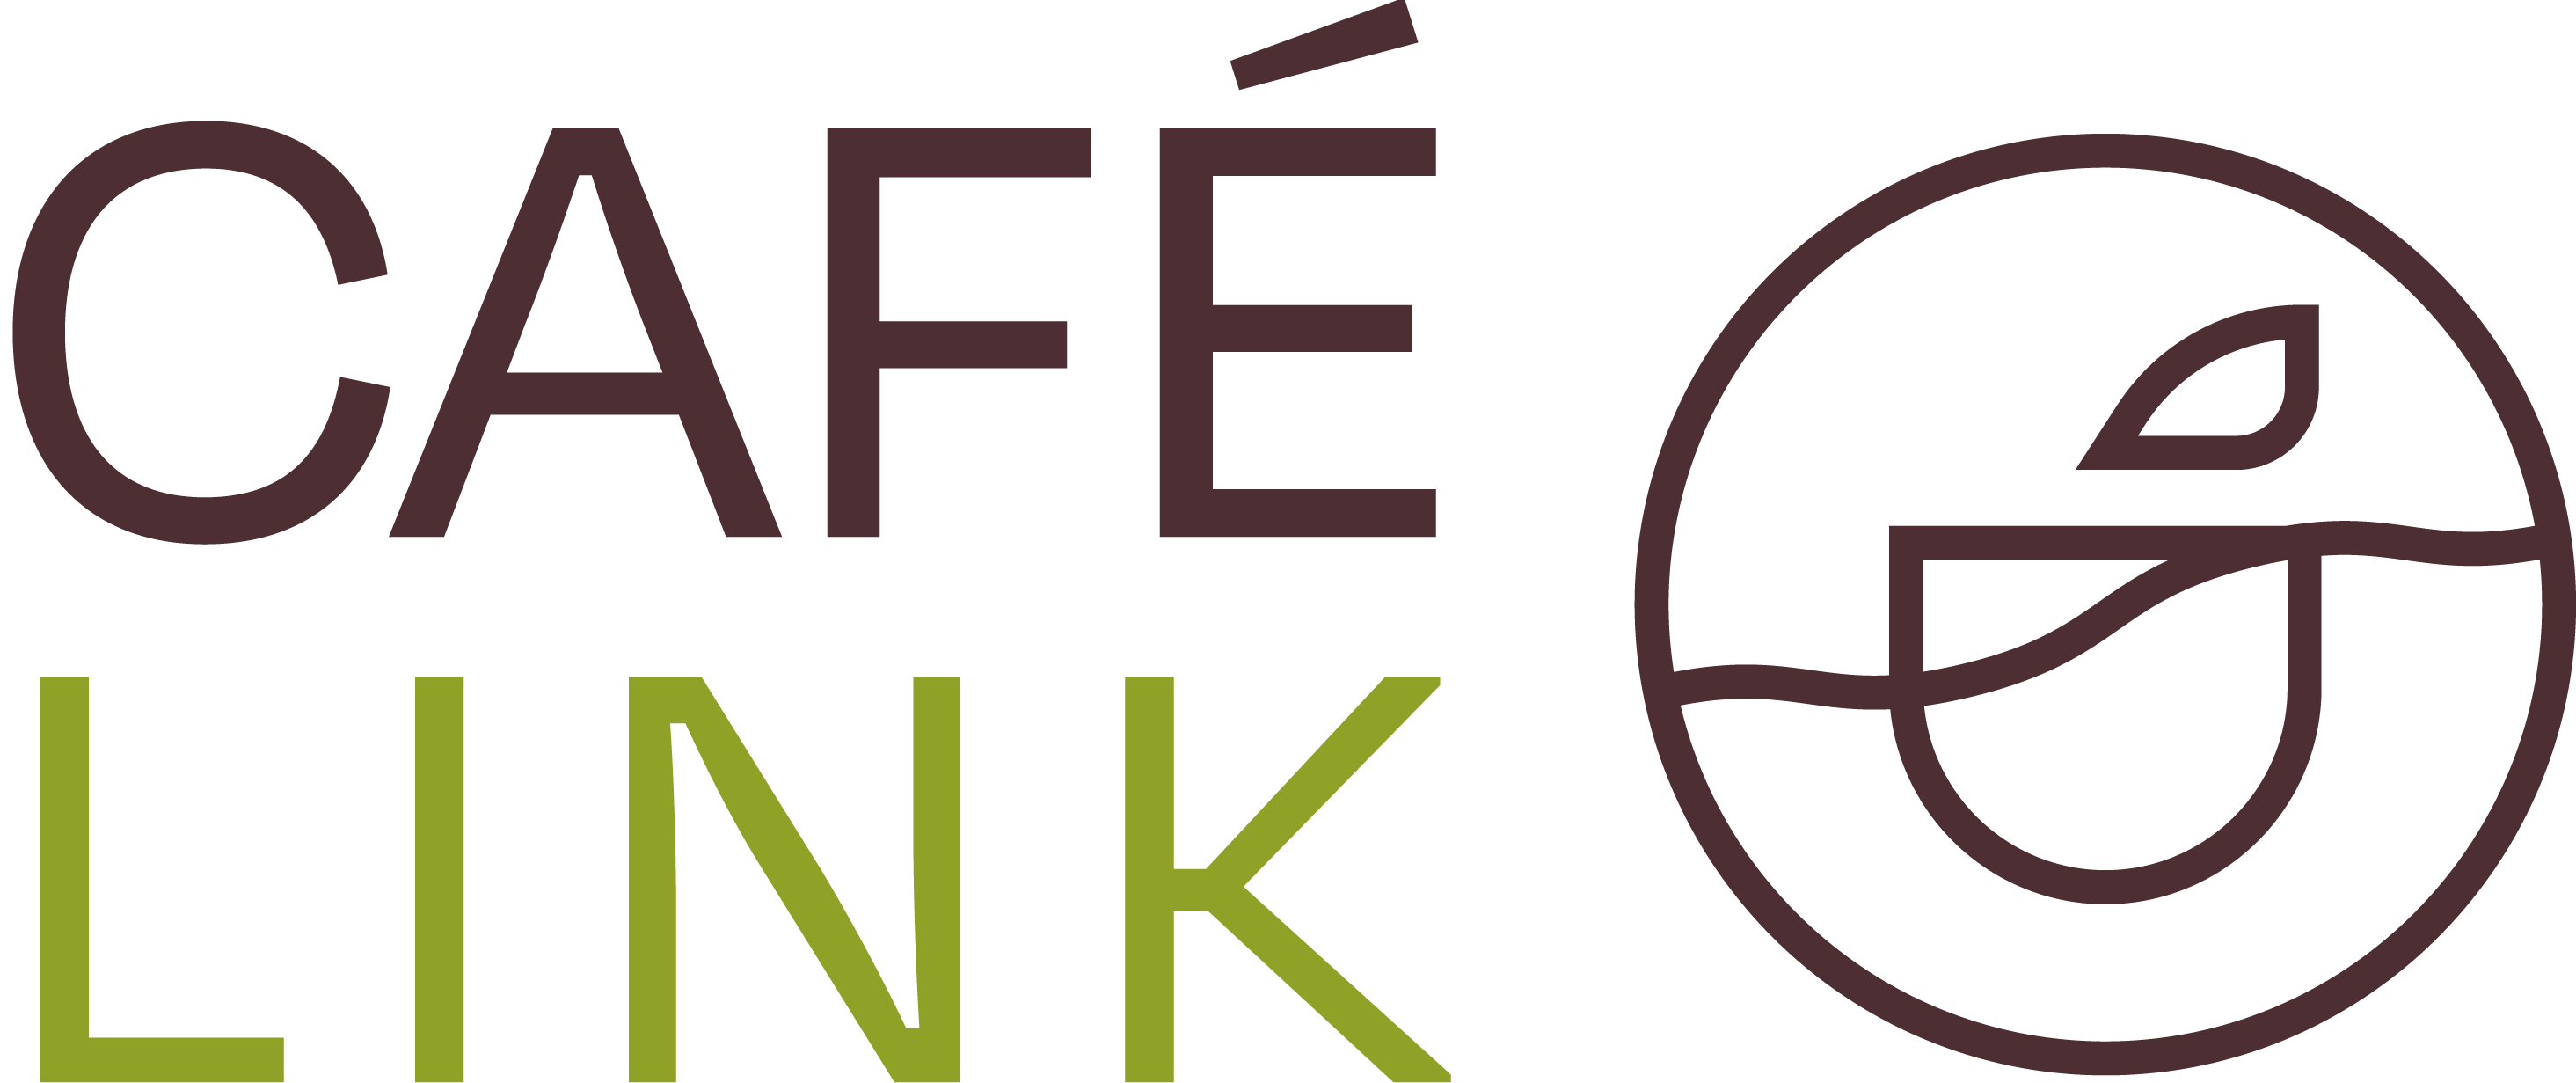 logo cafelink